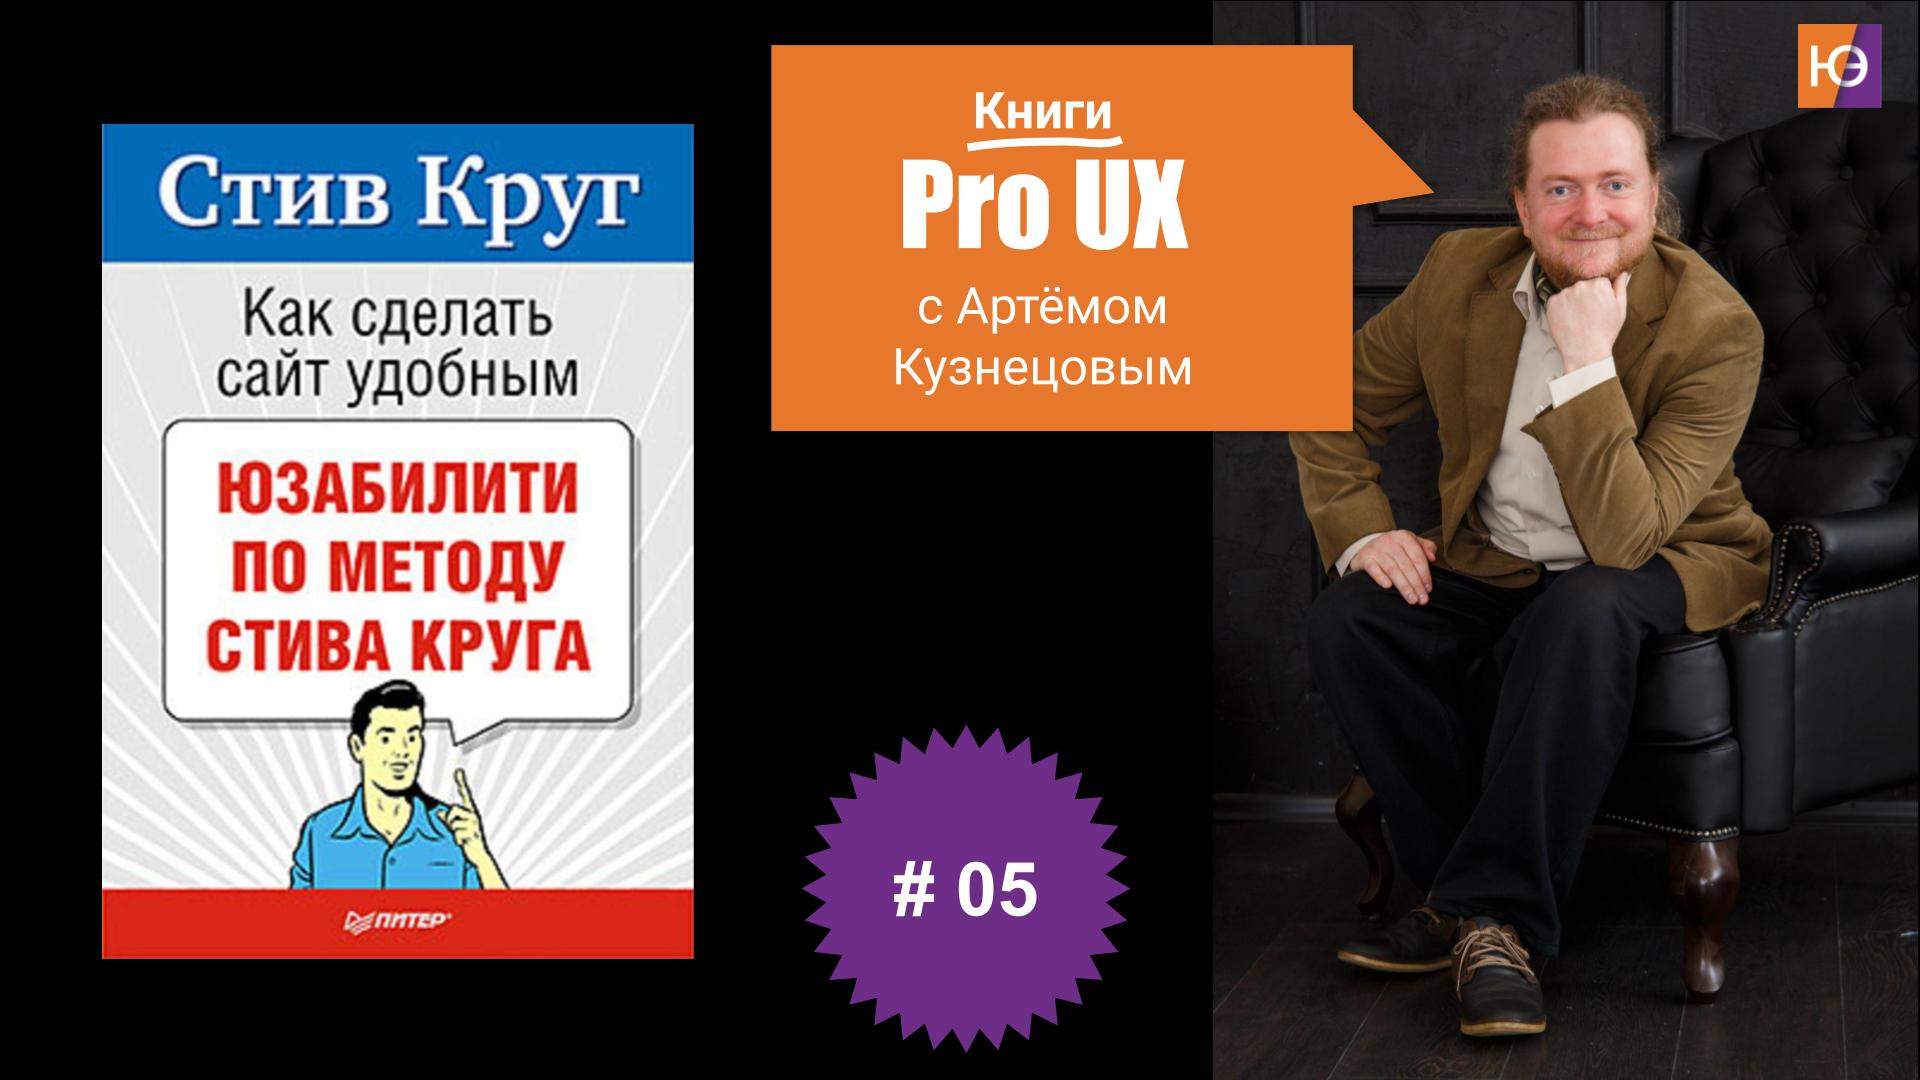 Книги Pro UX c Артёмом Кузнецовым #5 – Стив Круг “Как сделать сайт удобным. Юзабилити по методу Стива Круга”